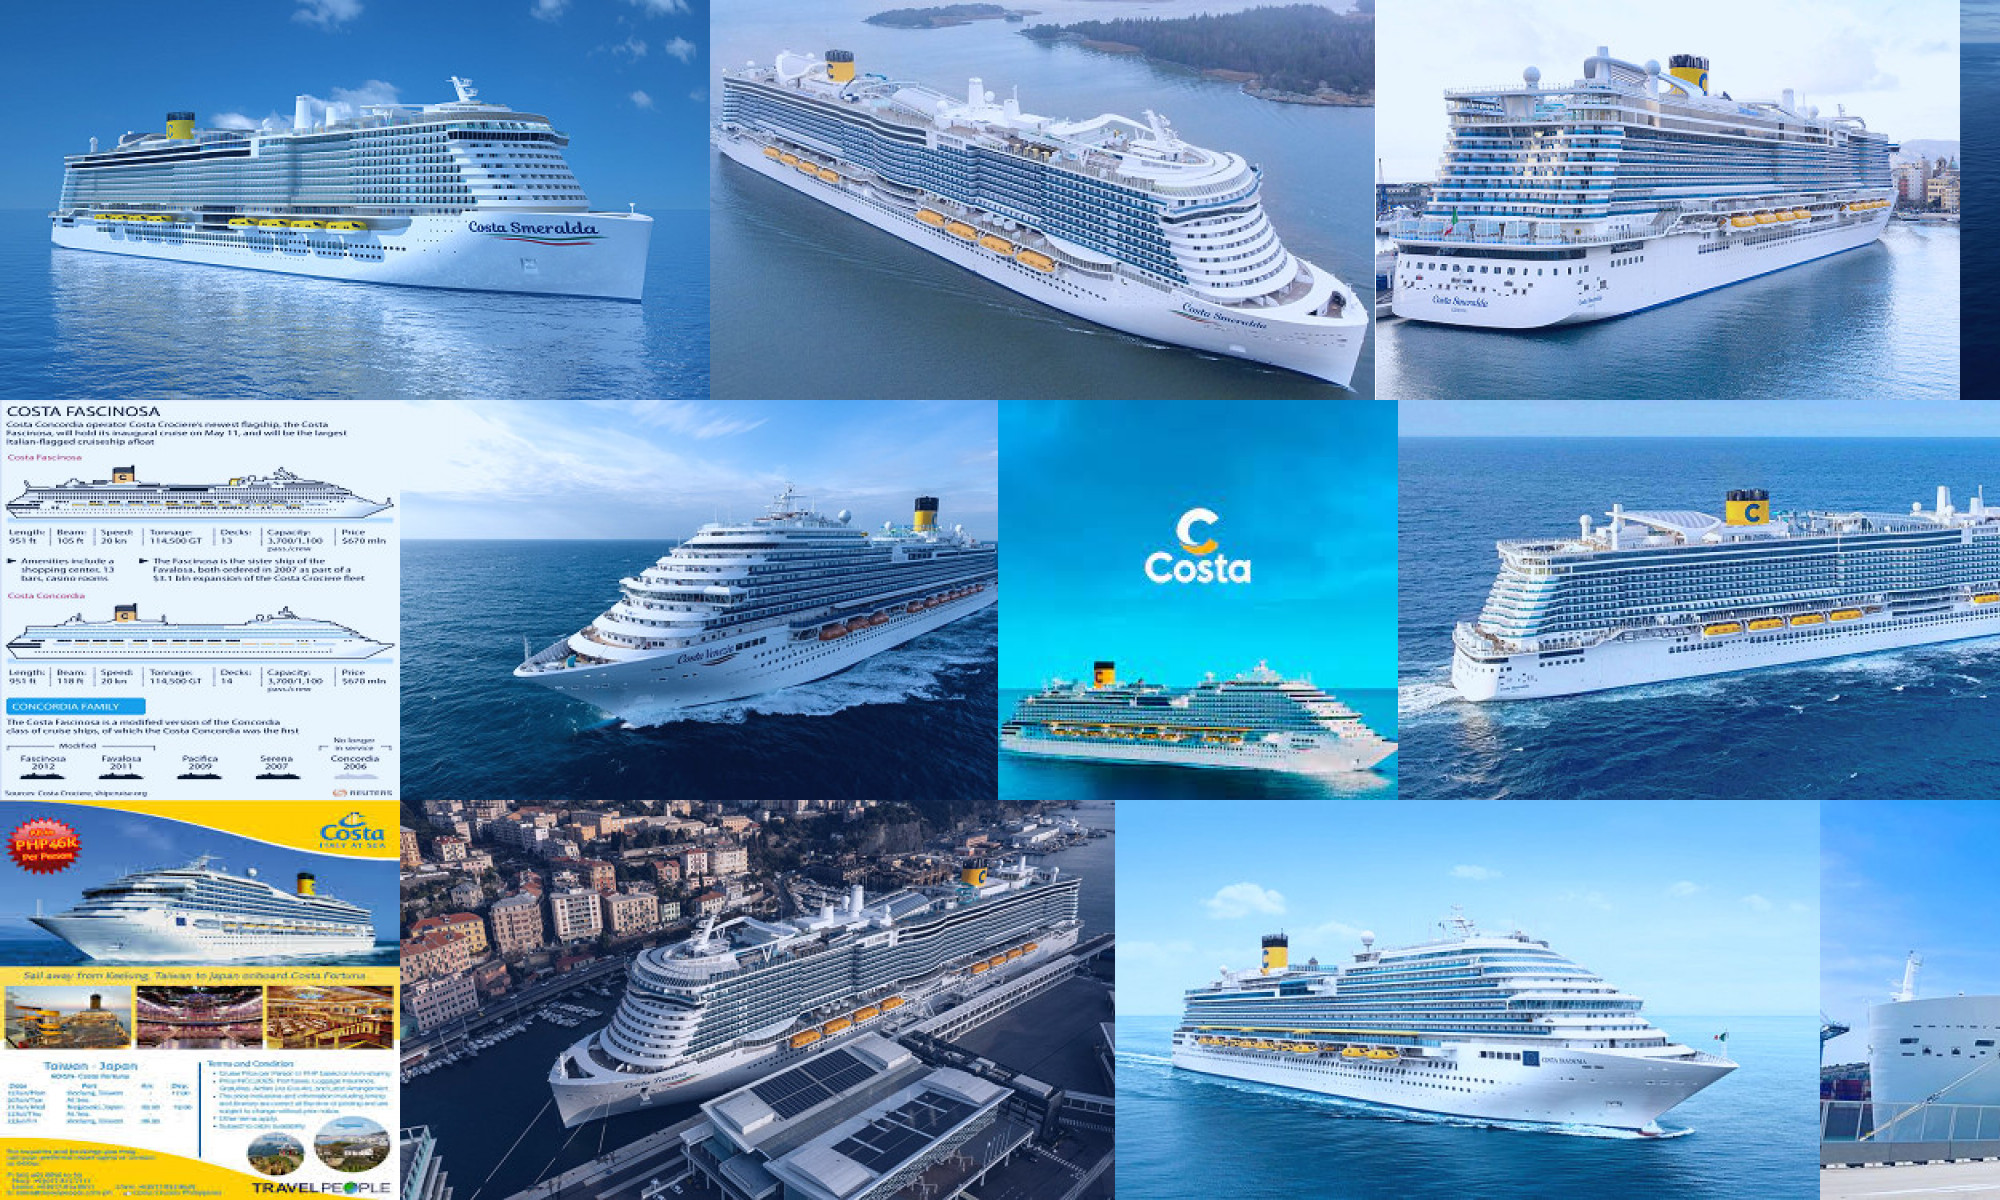 costa cruises